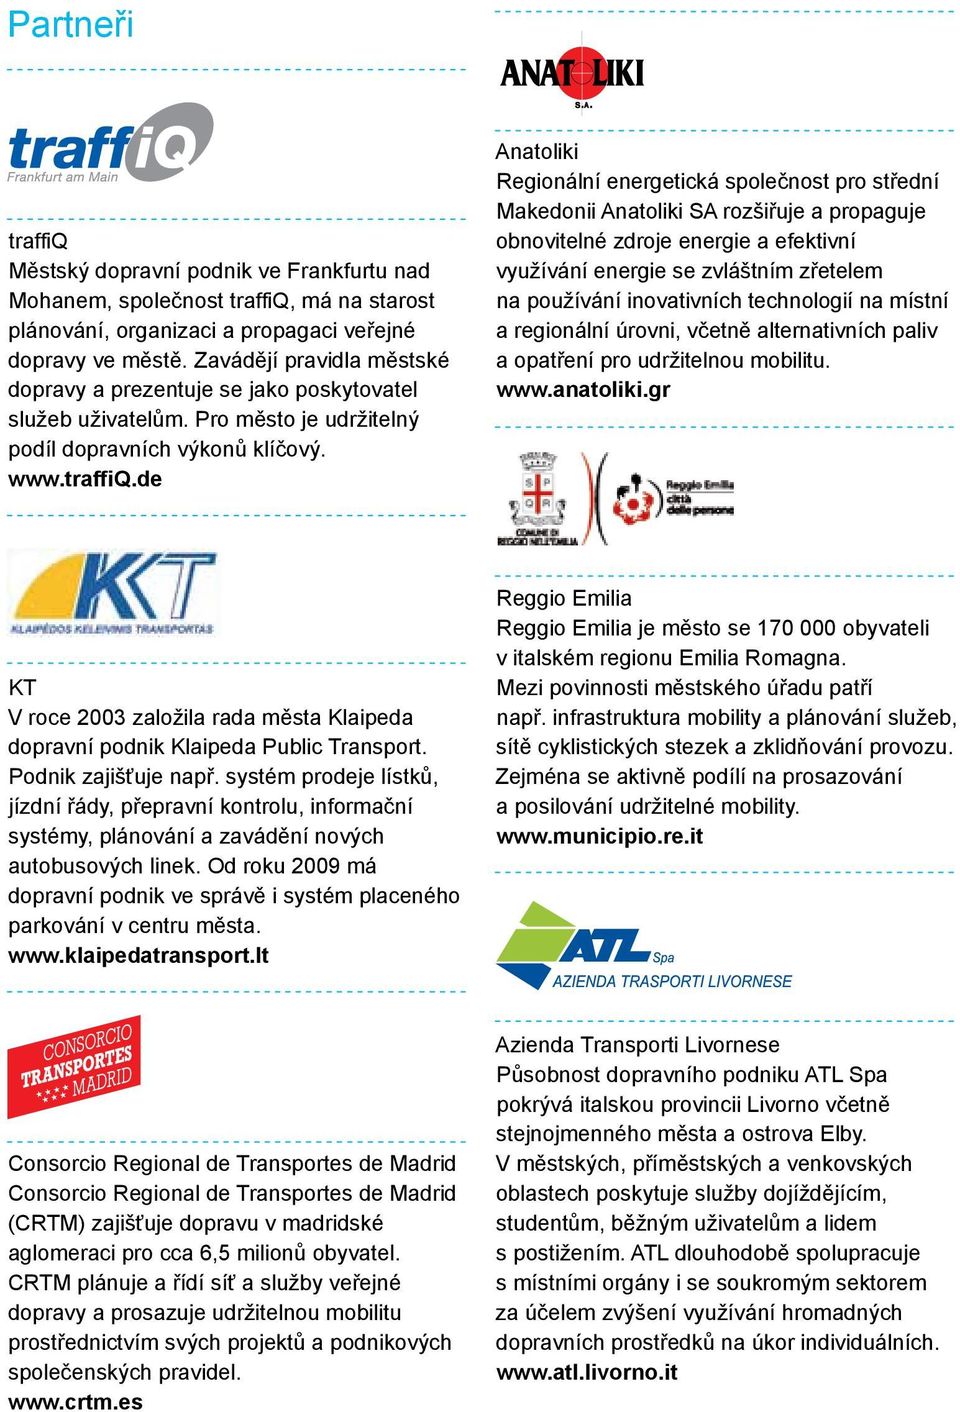 de Anatoliki Regionální energetická společnost pro střední Makedonii Anatoliki SA rozšiřuje a propaguje obnovitelné zdroje energie a efektivní využívání energie se zvláštním zřetelem na používání